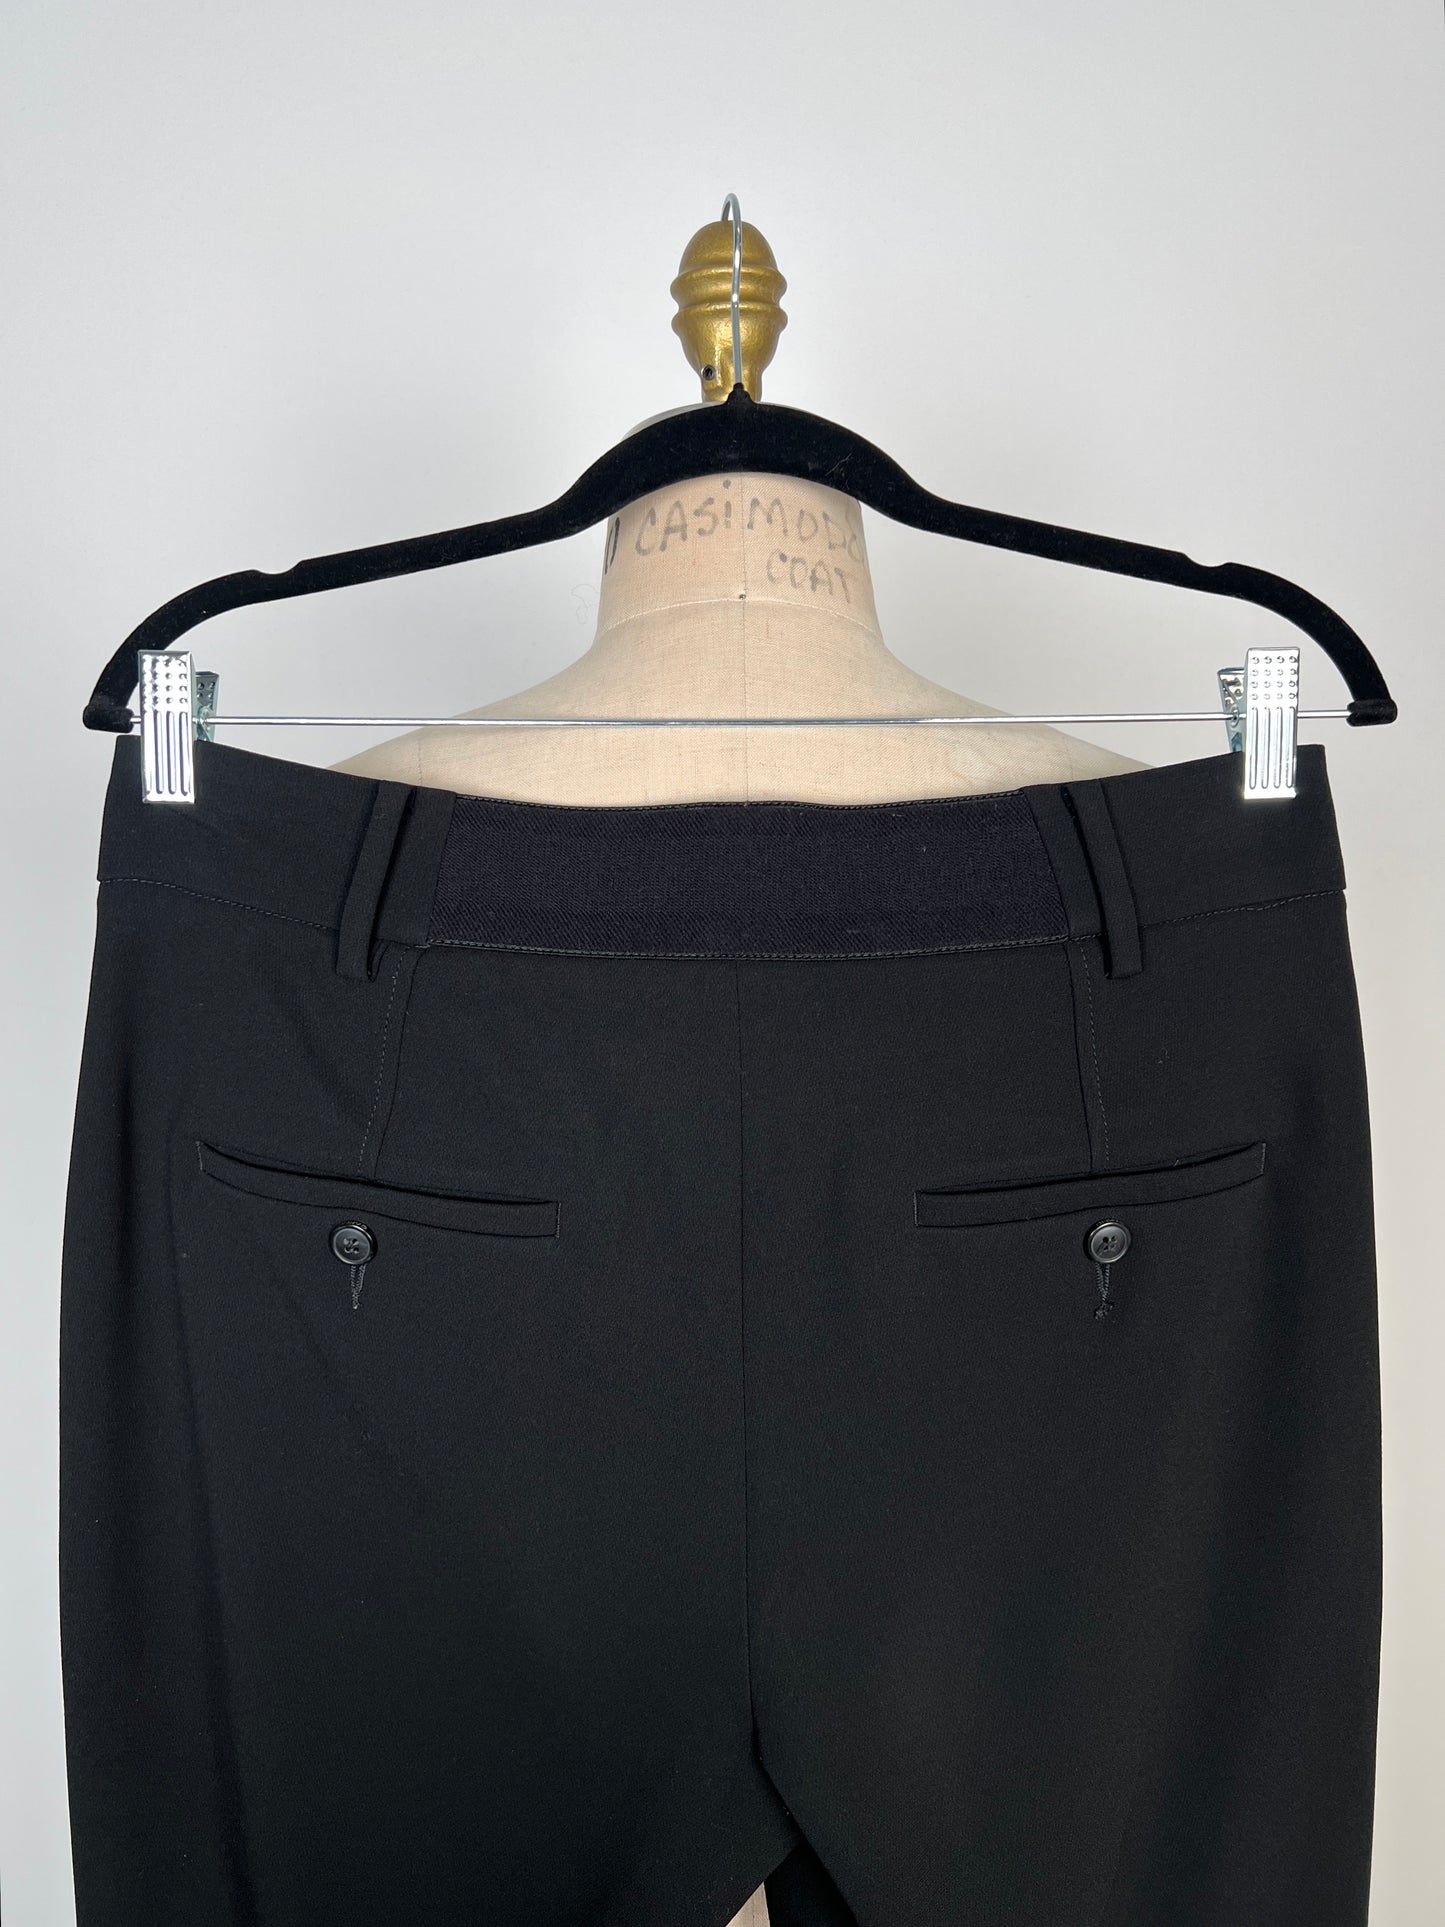 Pantalon hybride tailleur / jogger noir IMP* (6)